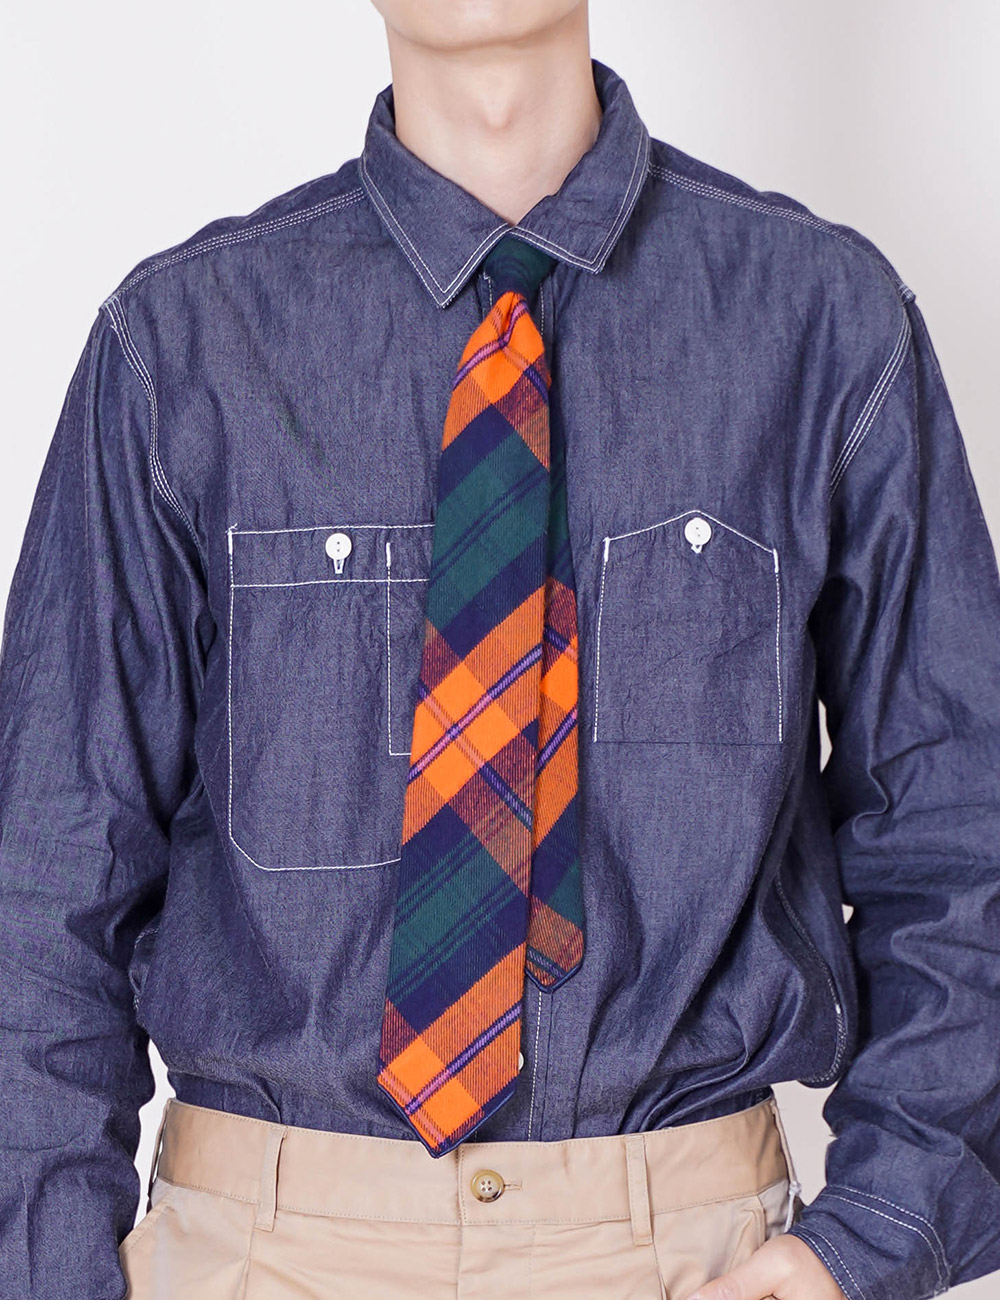 Engineered Garments : Neck Tie (Orange/Navy/Green Cotton Twill Plaid)